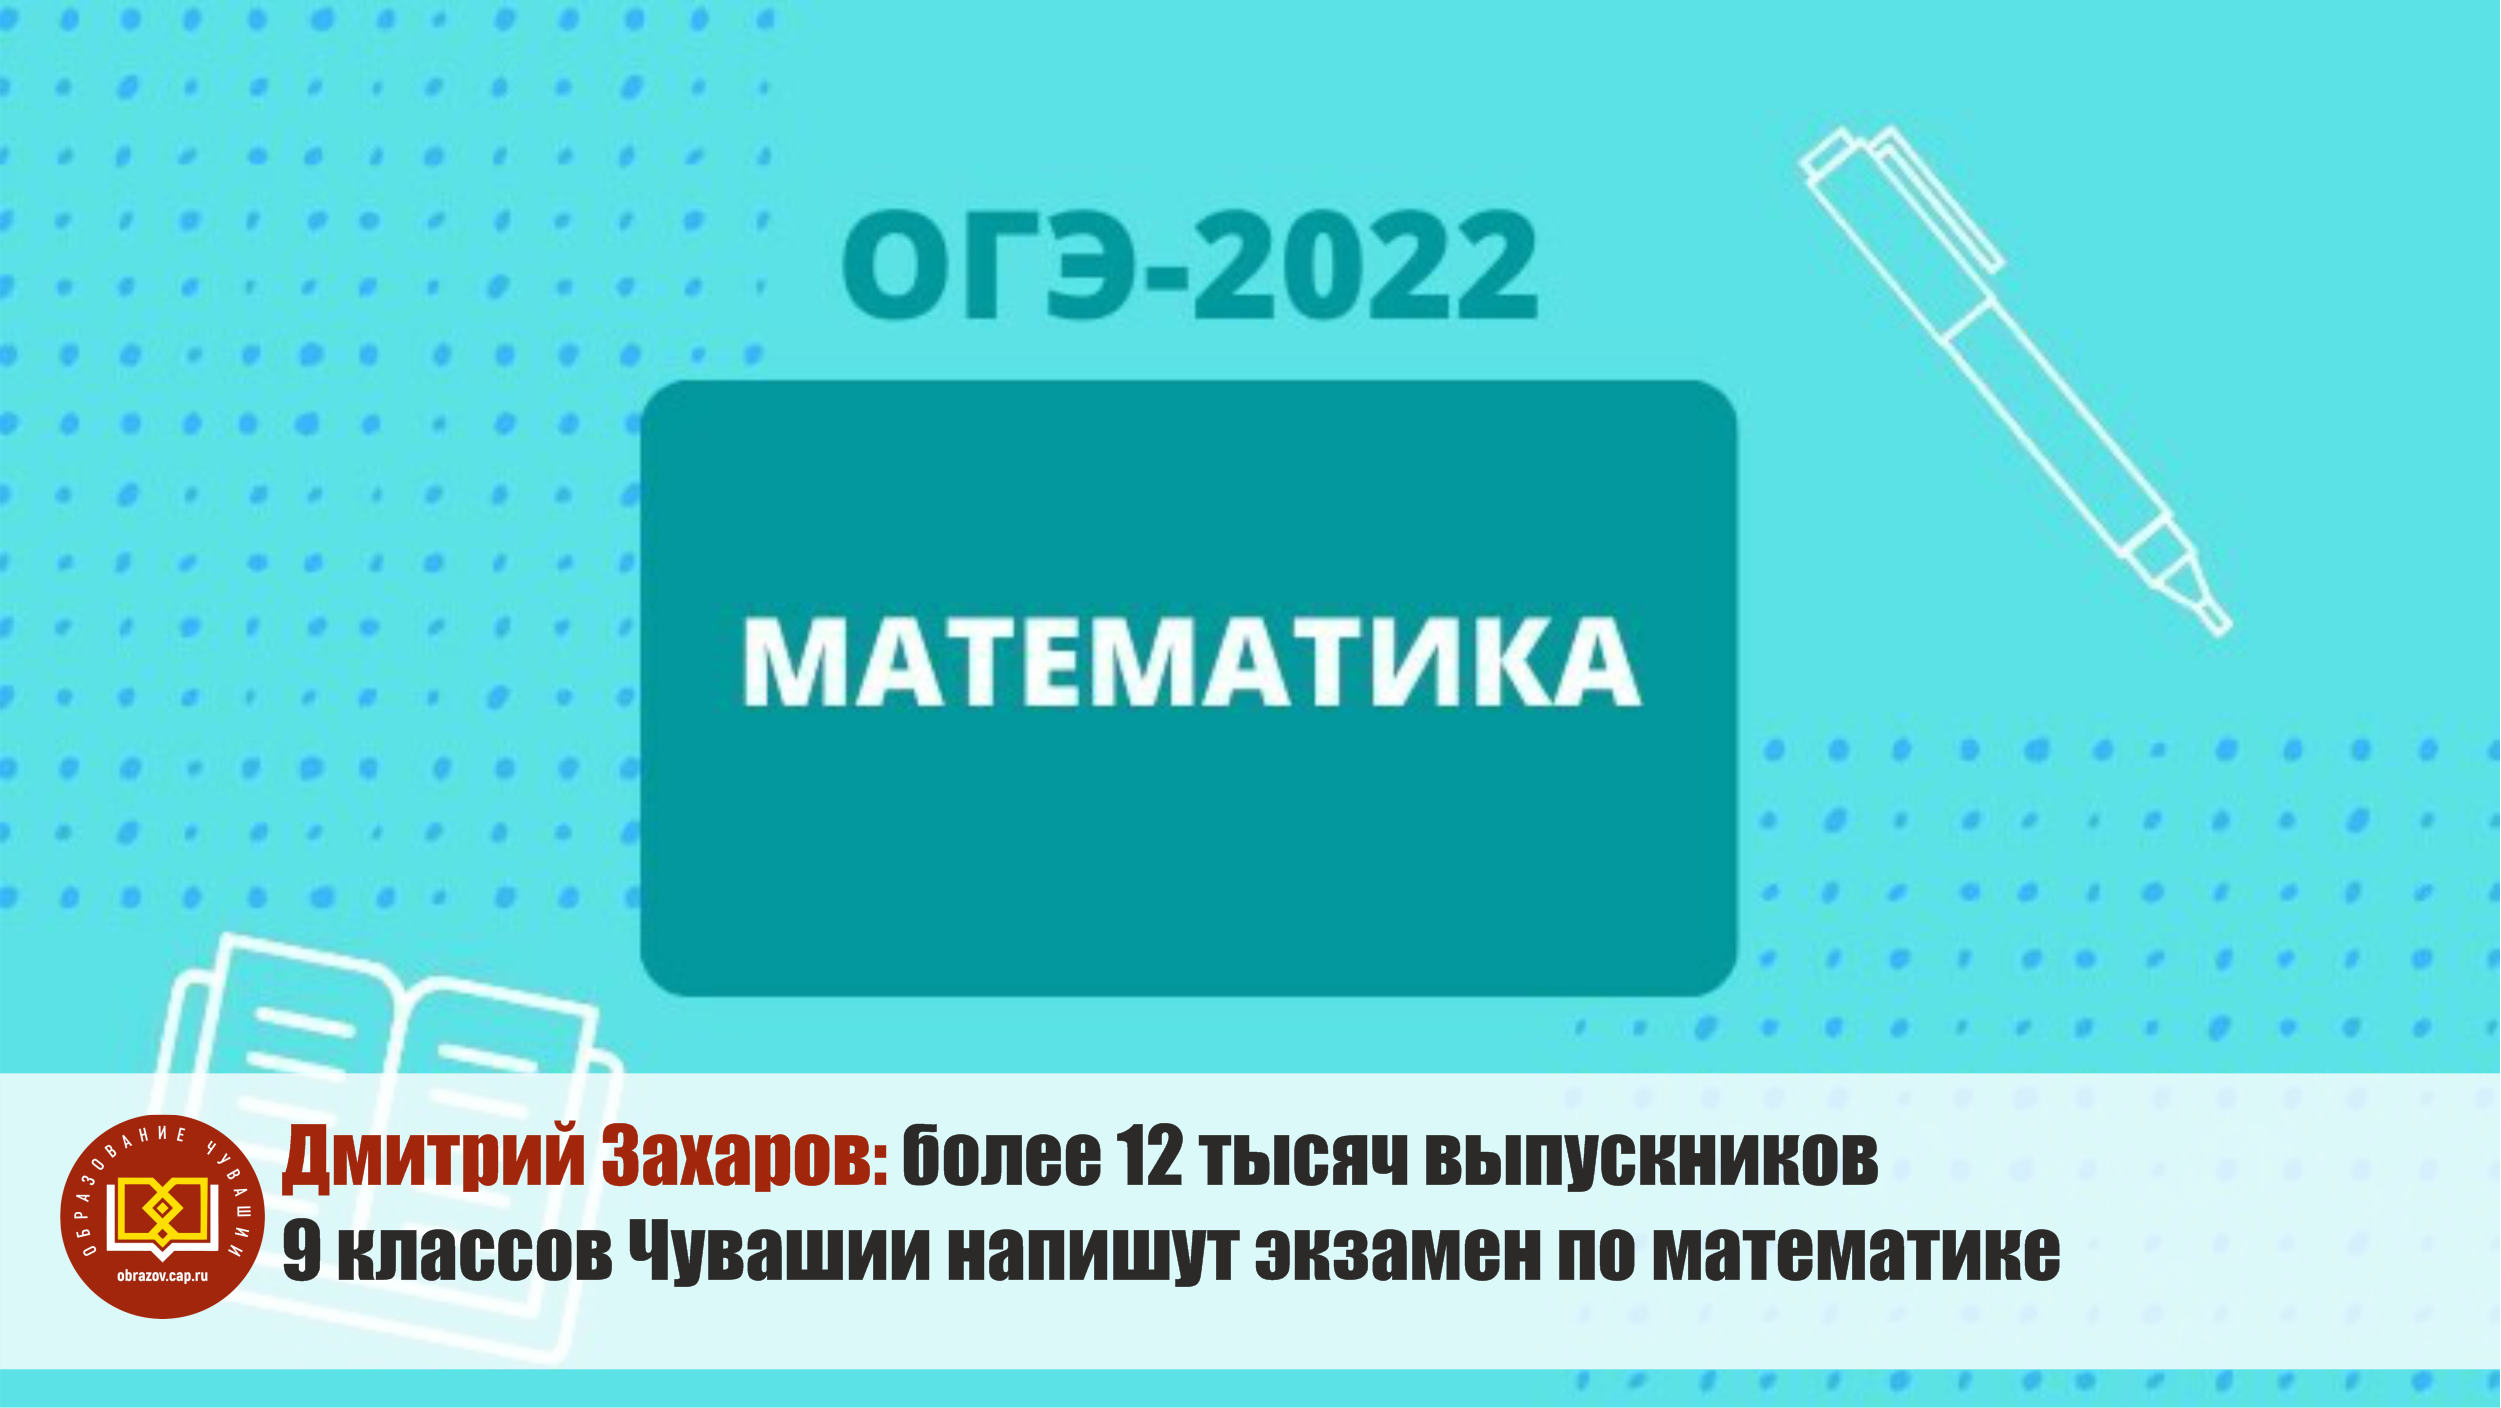 9 мая экзамен. ОГЭ 2022 23 мая. Сегодняшний экзамен по математике. Экзамен по математике 9 класс 2022. Экзамен 9 класс 2022 математика русский.